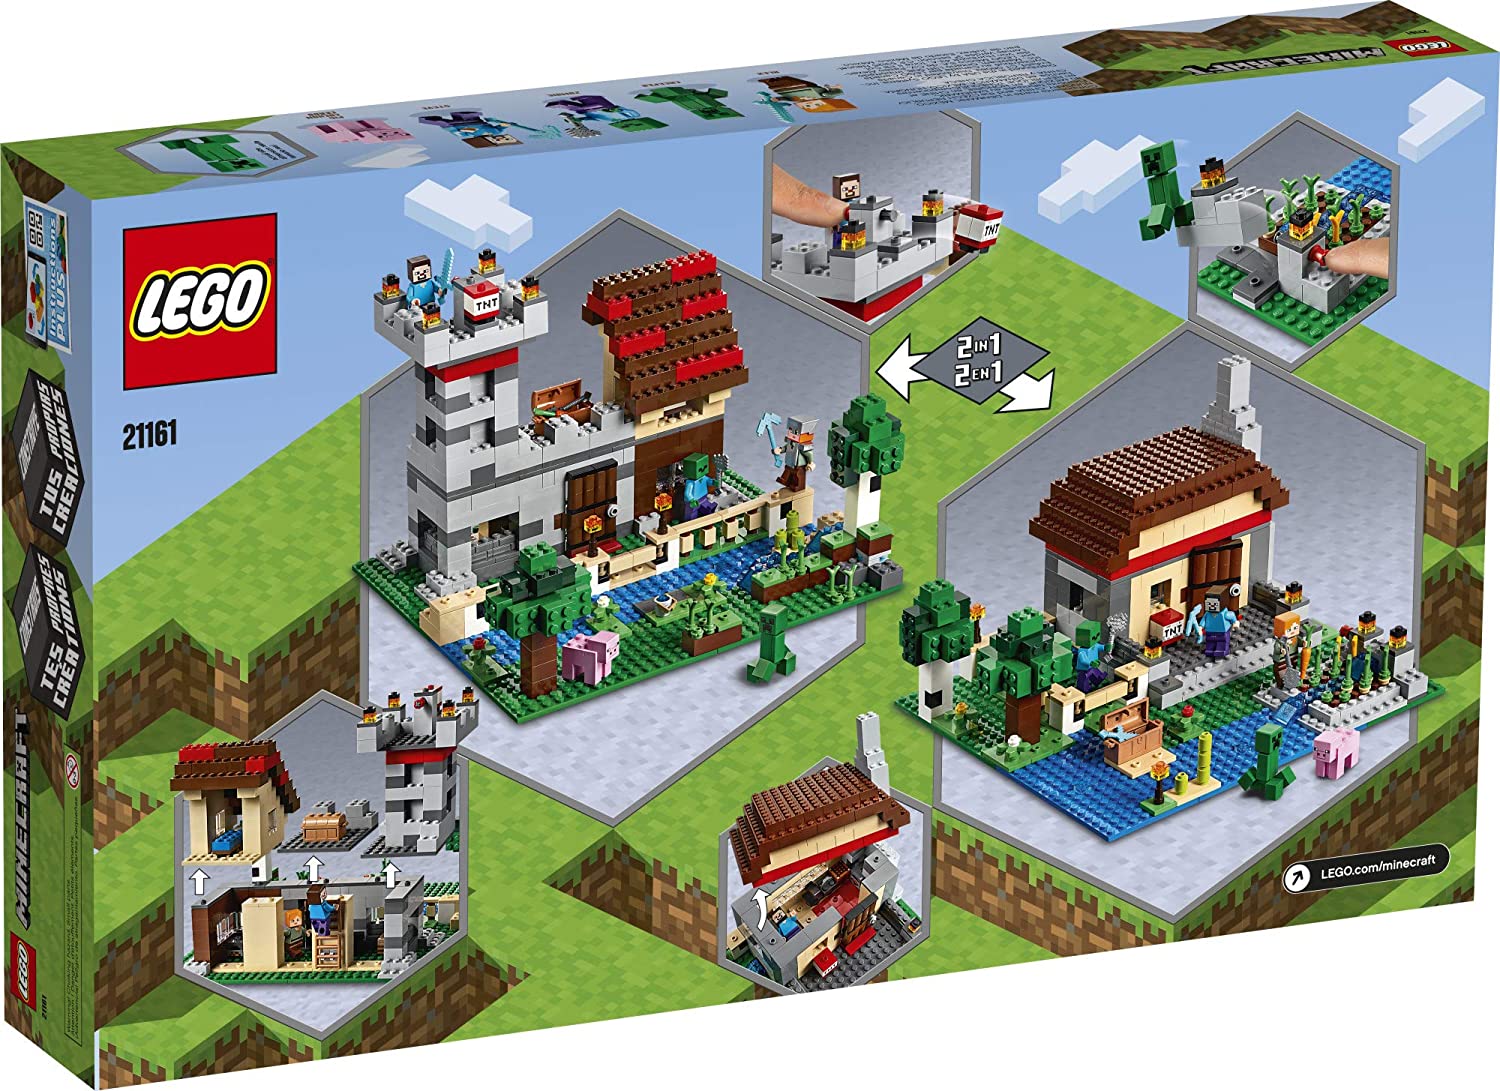 LEGO Lego Minecraft Hộp thủ công  21161 Minecraft Building Blocks Đồ  chơi và Nhân vật Mini, Bộ xây dựng lâu đài và nông trại, dành cho người  chơi Minecraft từ 8